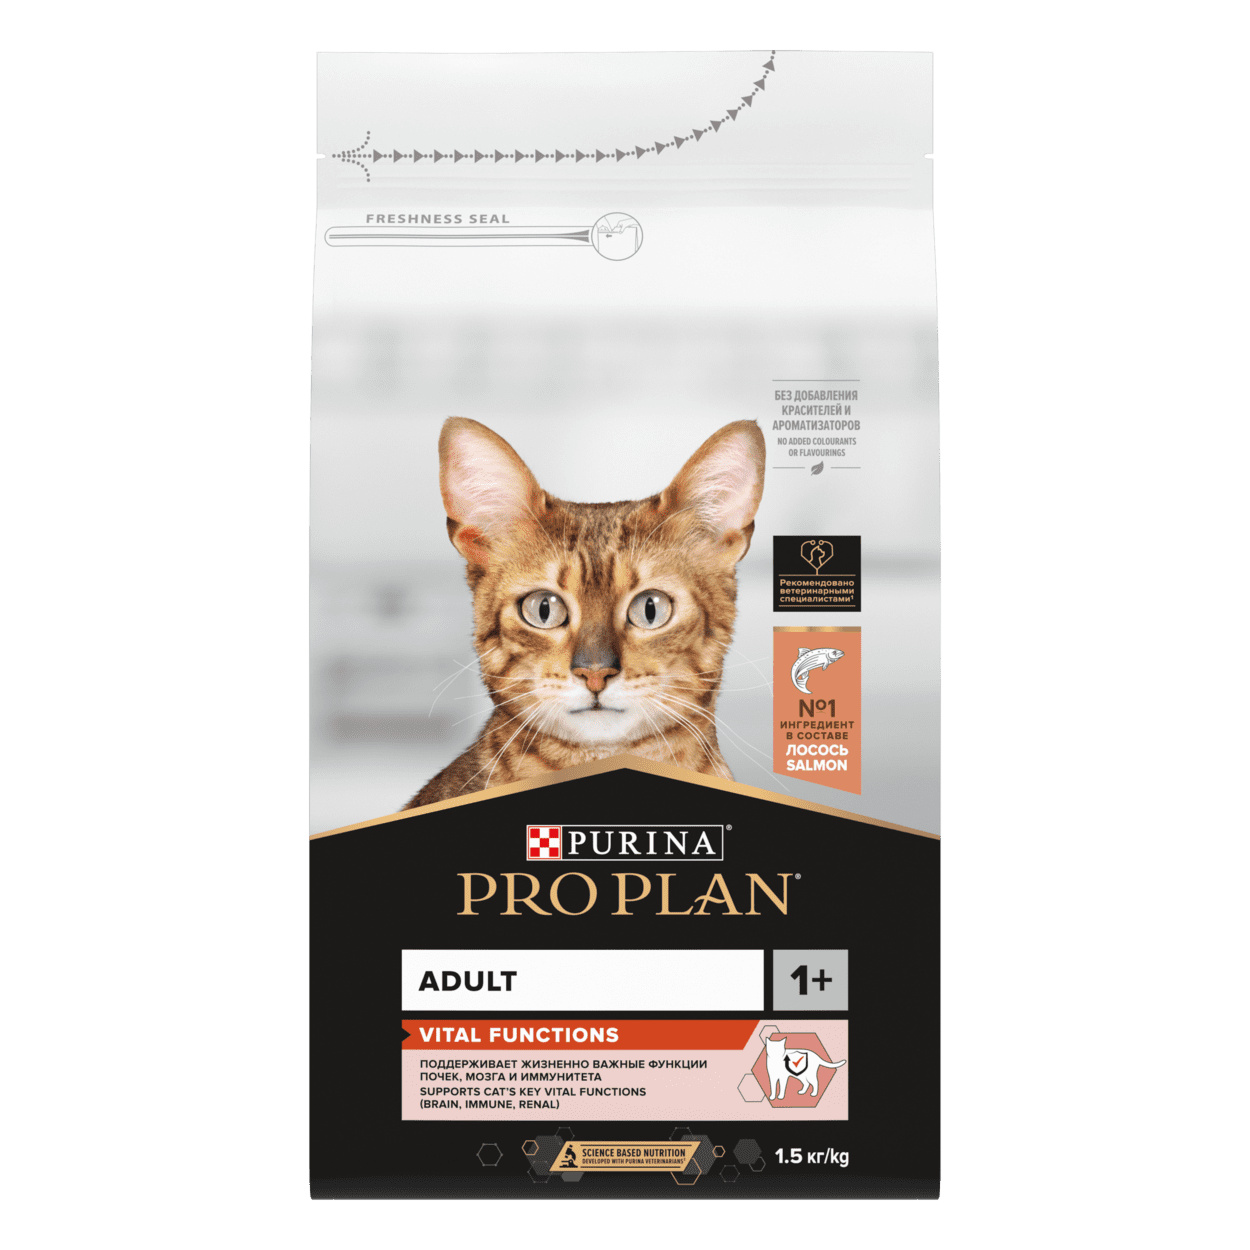 Purina Pro Plan Purina Pro Plan для взрослых кошек, с высоким содержанием лосося (1,5 кг)